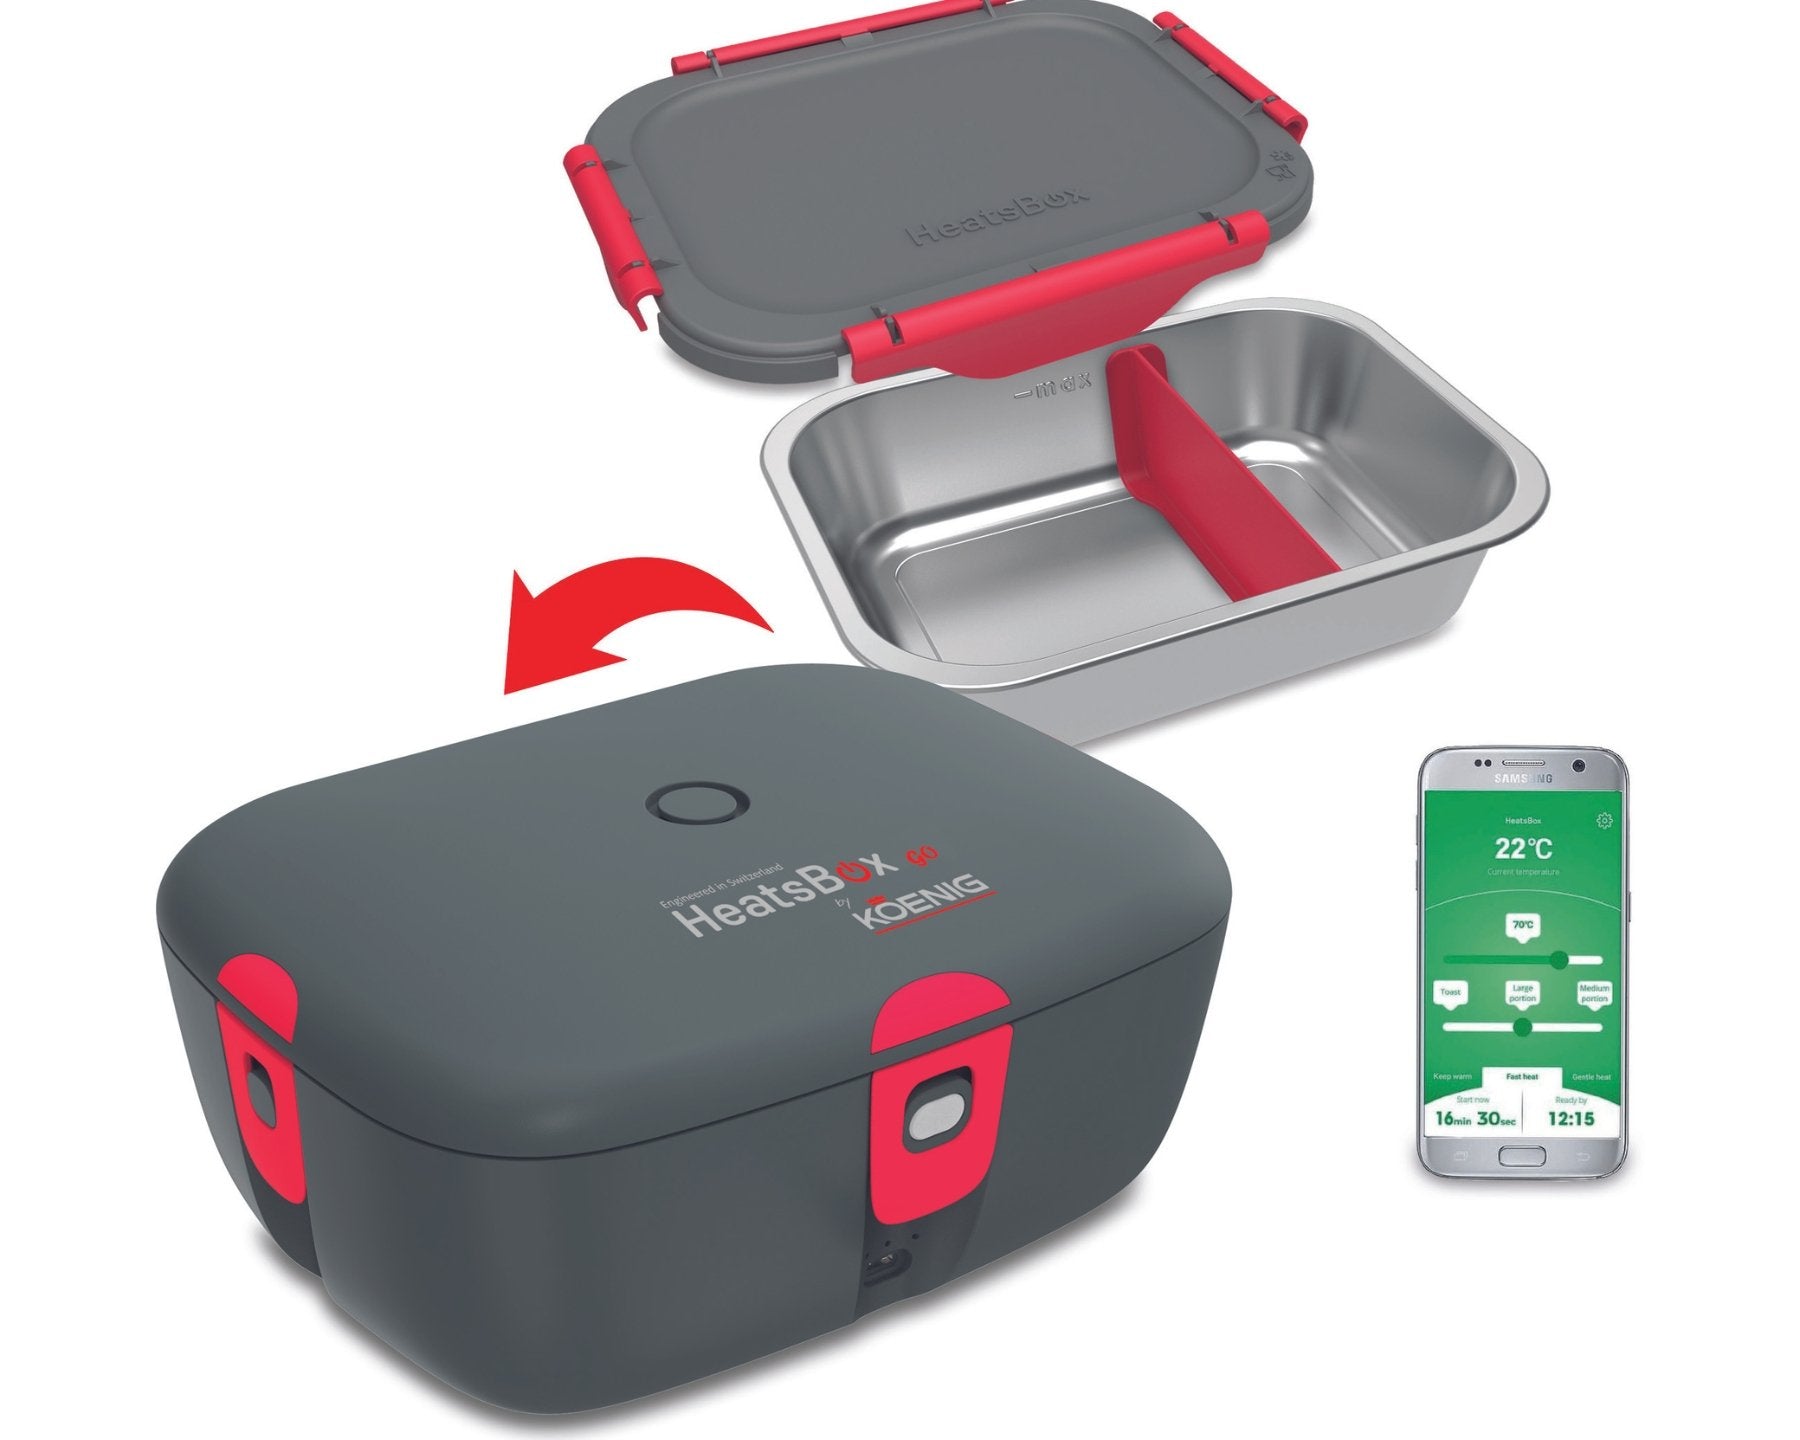 KOENIG HeatsBox go, Lunchbox mit Akku - kitchen-more.ch, kostenloser Versand in der ganzen Schweiz